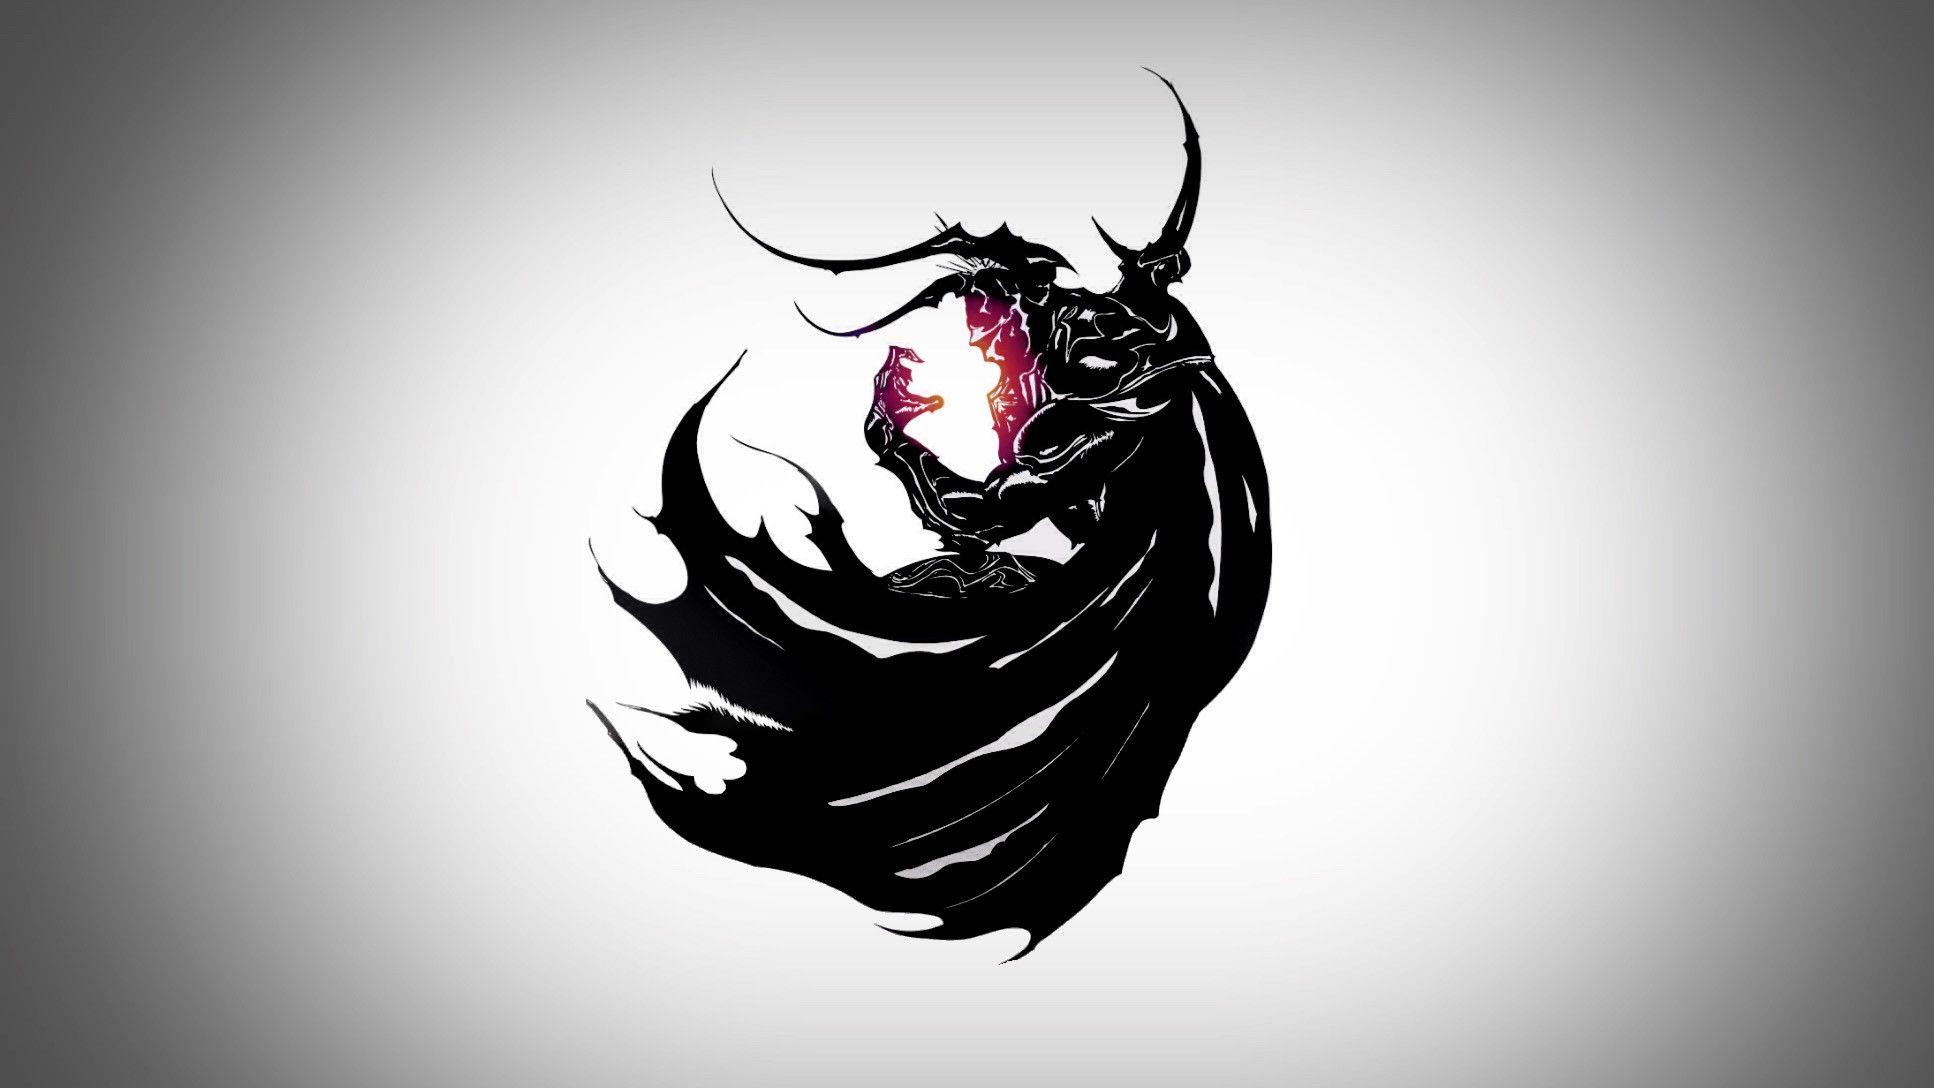 Ffiv Logo - Wallpaper : drawing, illustration, dark, logo, Final Fantasy, Square ...